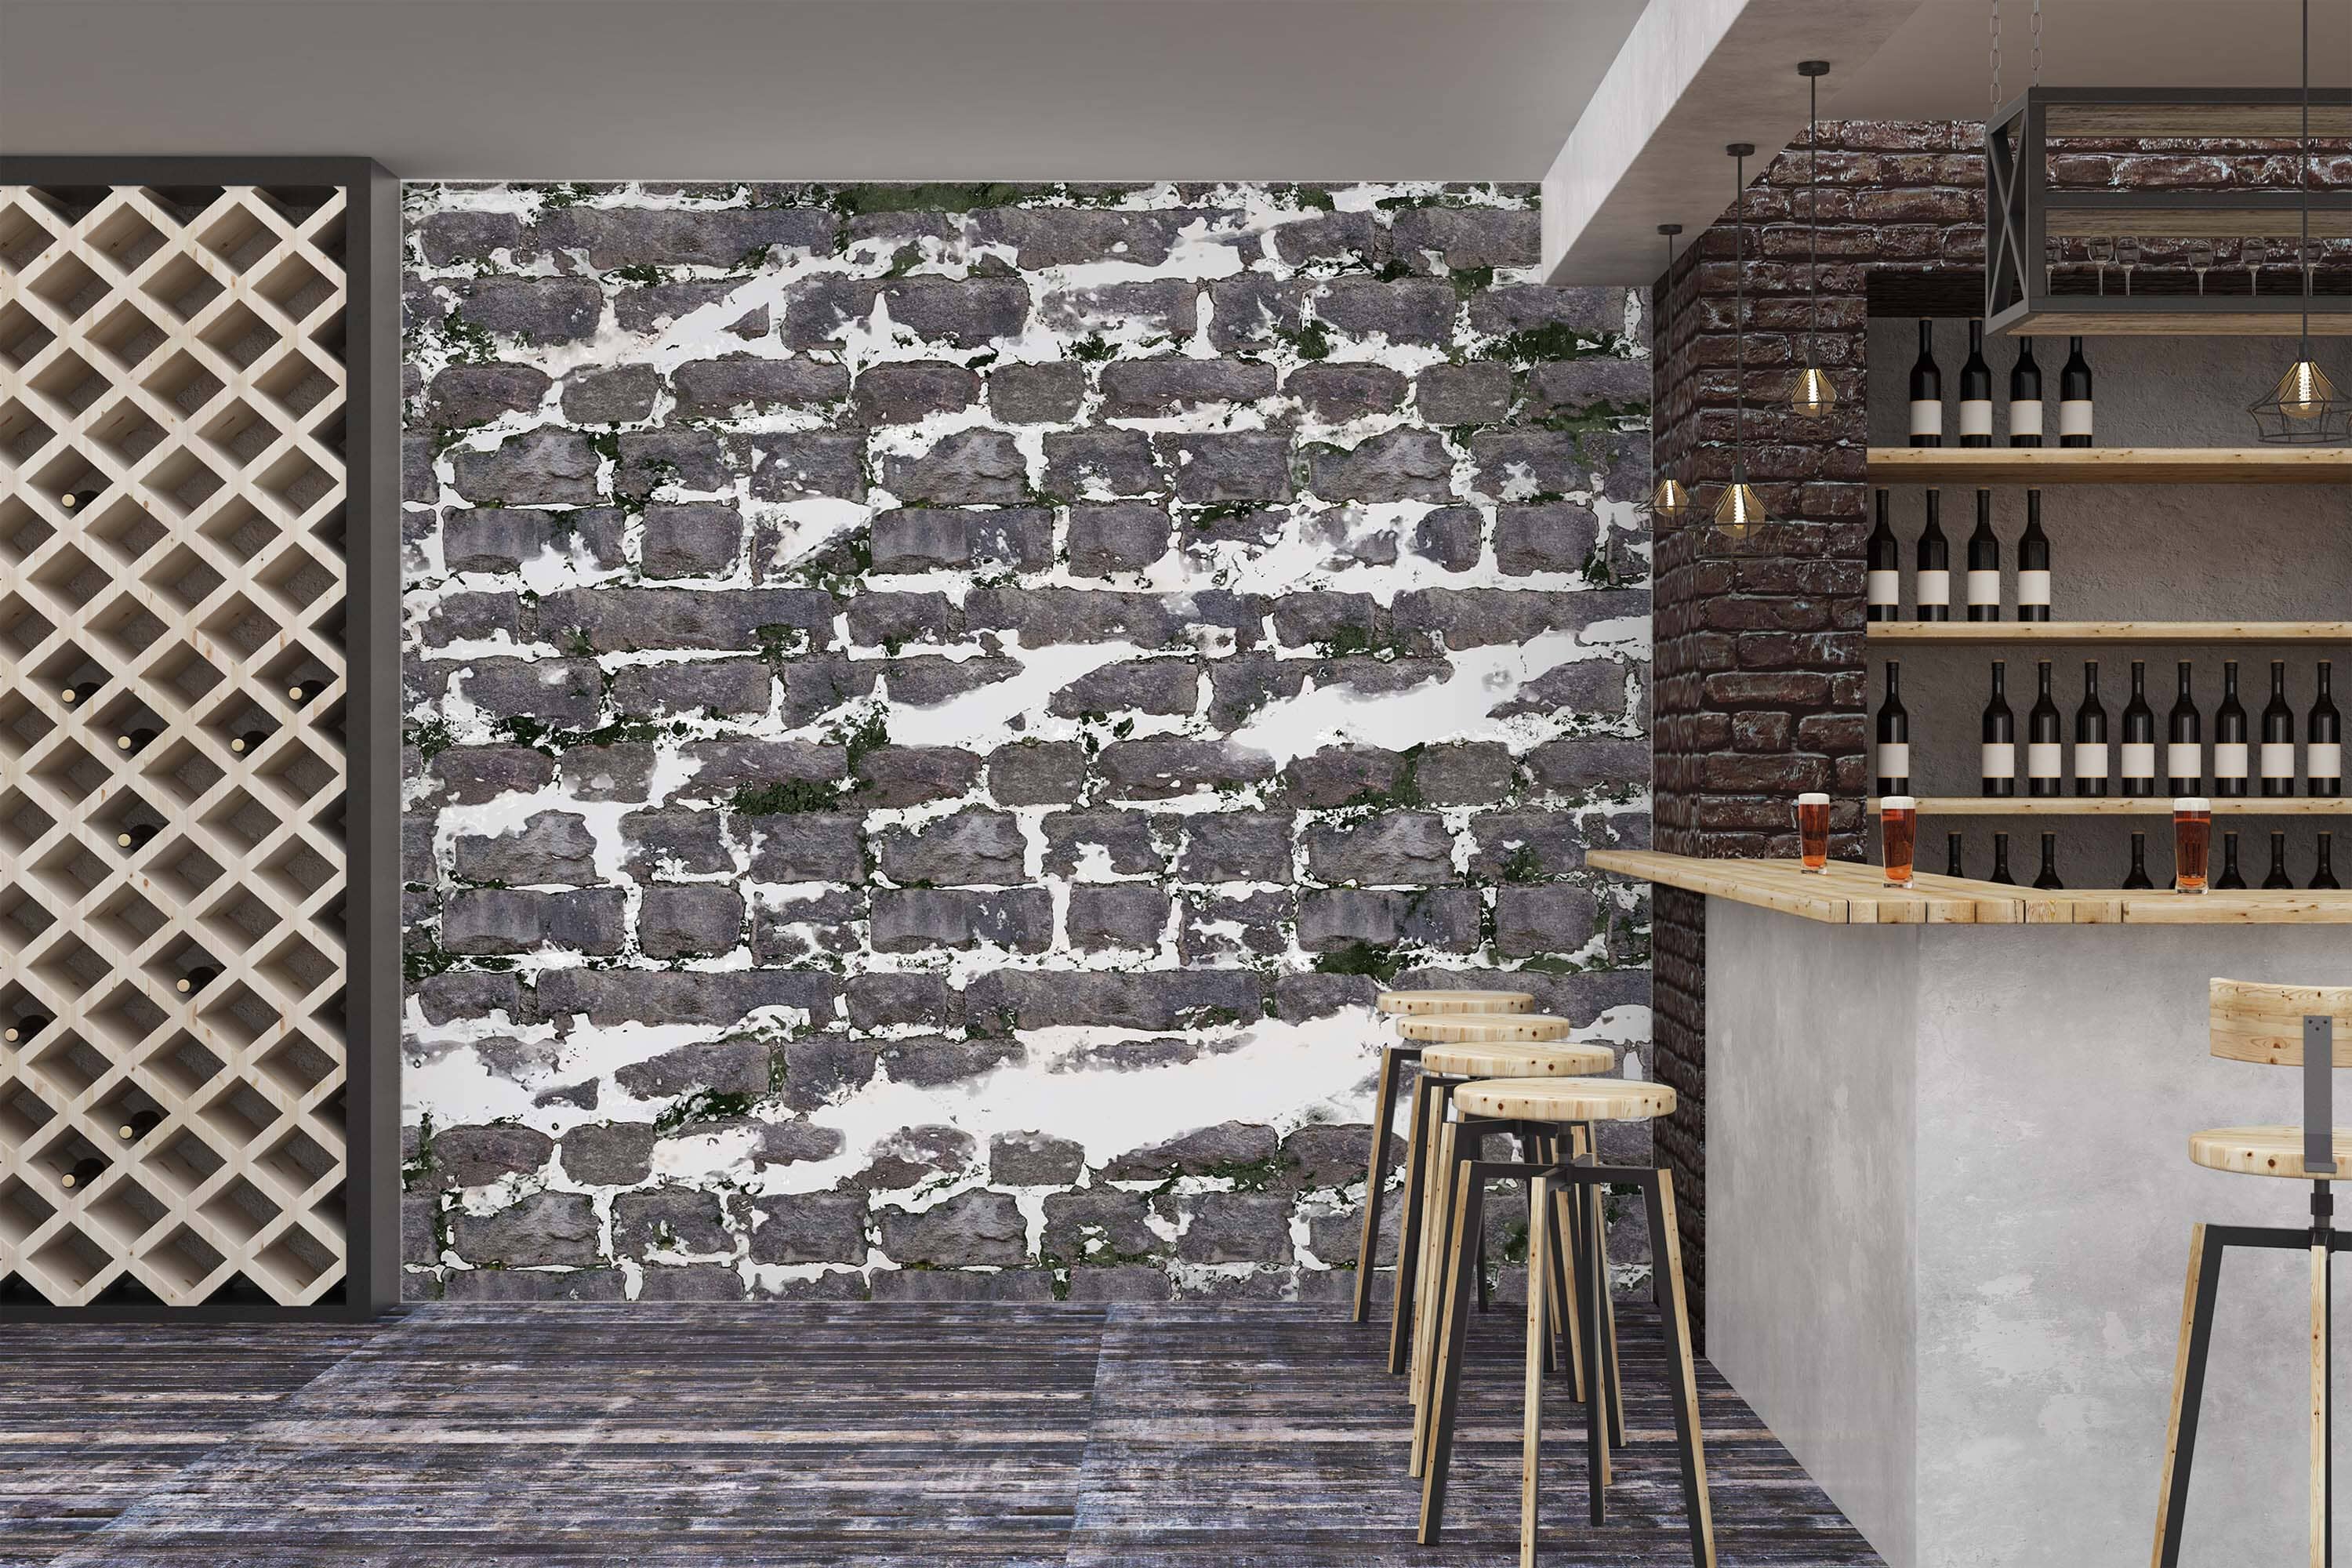 3D Grey Bricks 1435 Wall Murals Wallpaper AJ Wallpaper 2 